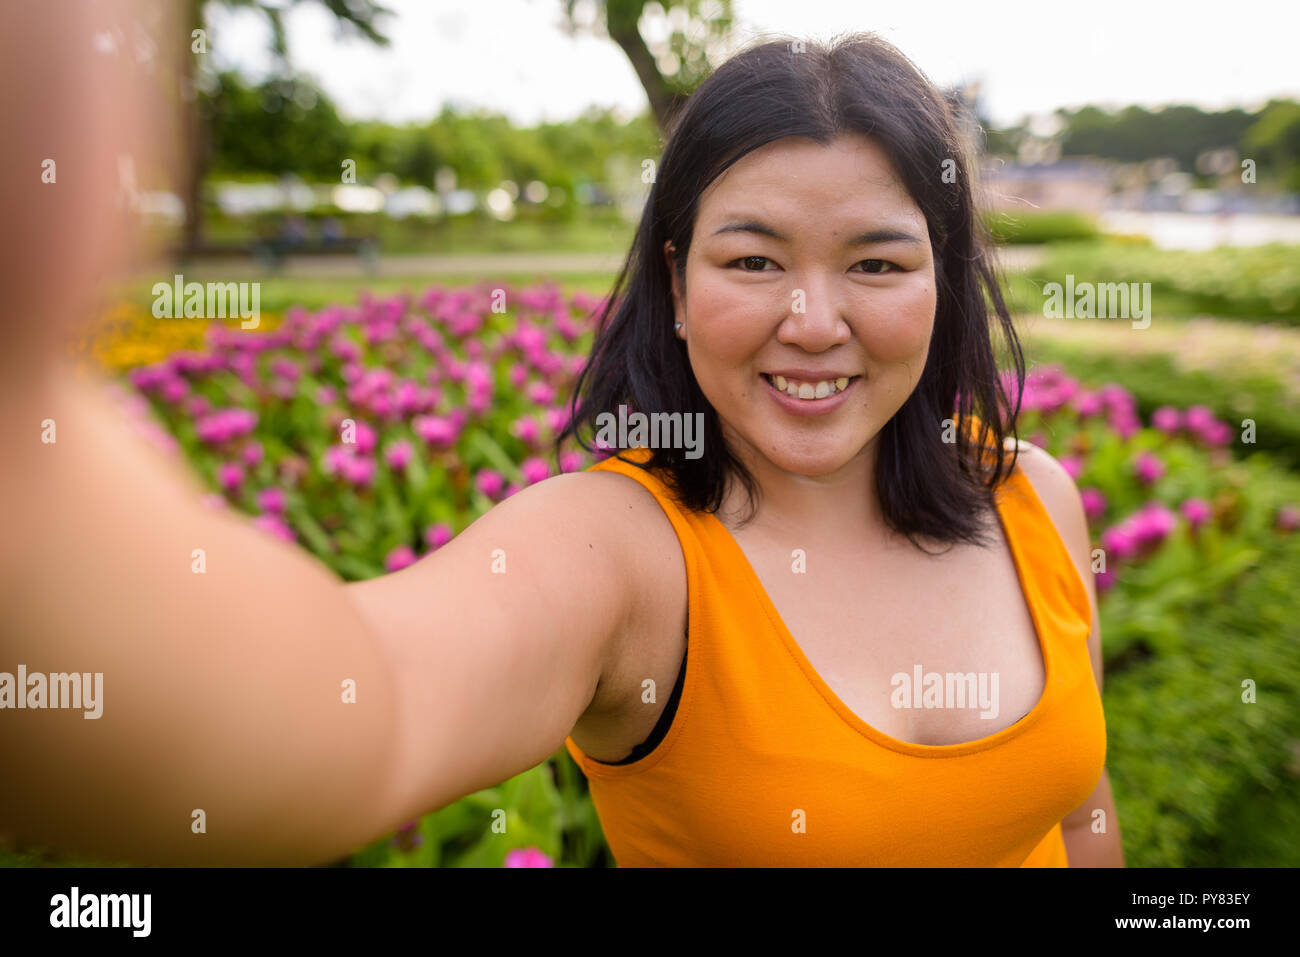 Persönliche Sicht der Schönen übergewichtige Frau unter selfie in Park Stockfoto